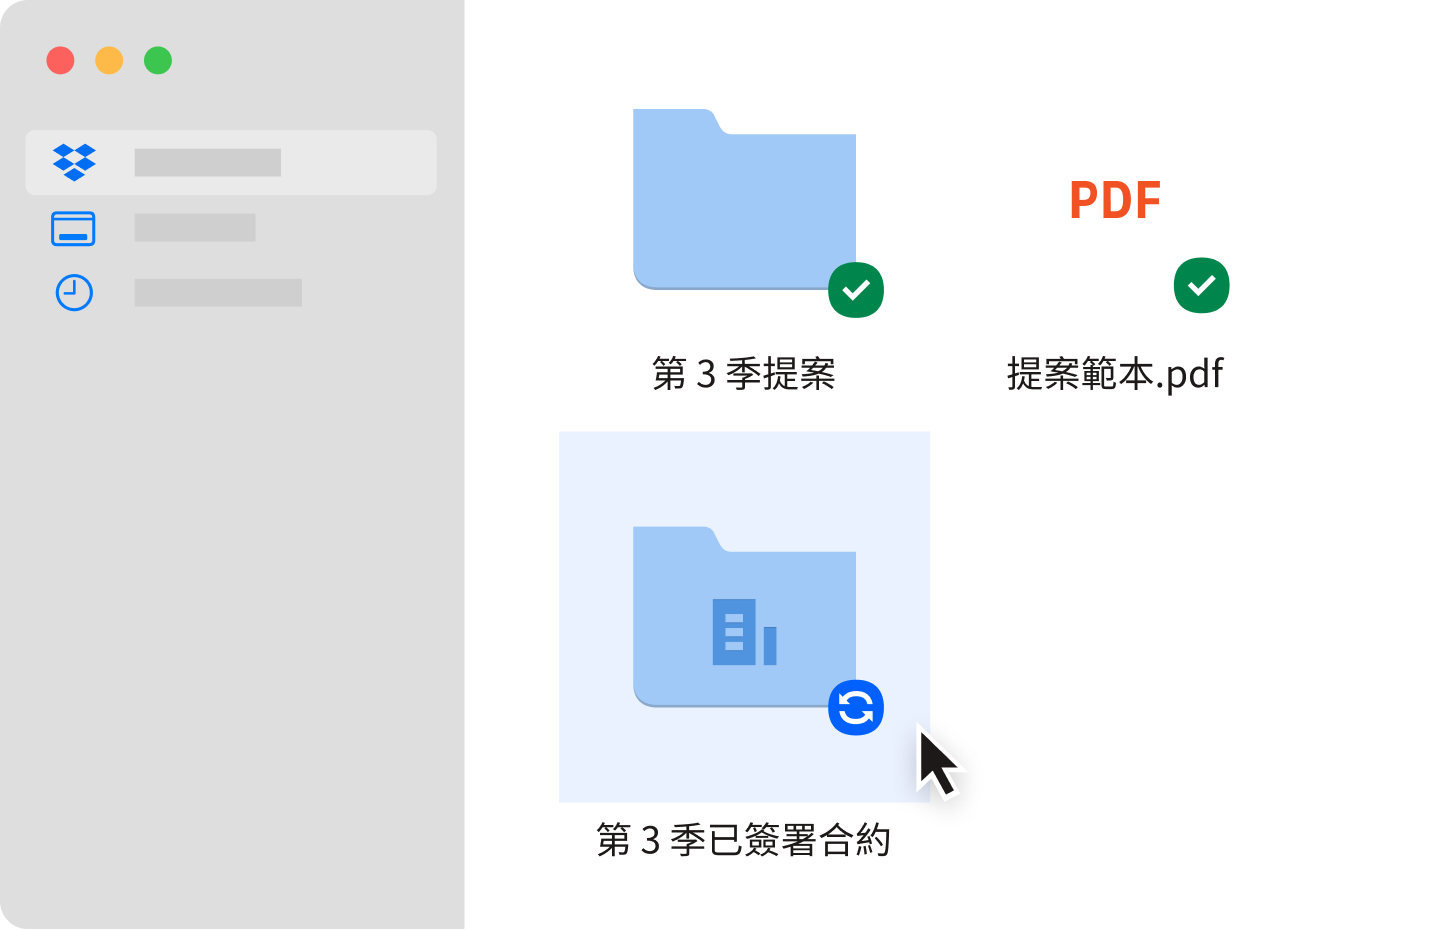 已於 Dropbox 帳戶中同步的兩個藍色資料夾和一份 PDF 文件